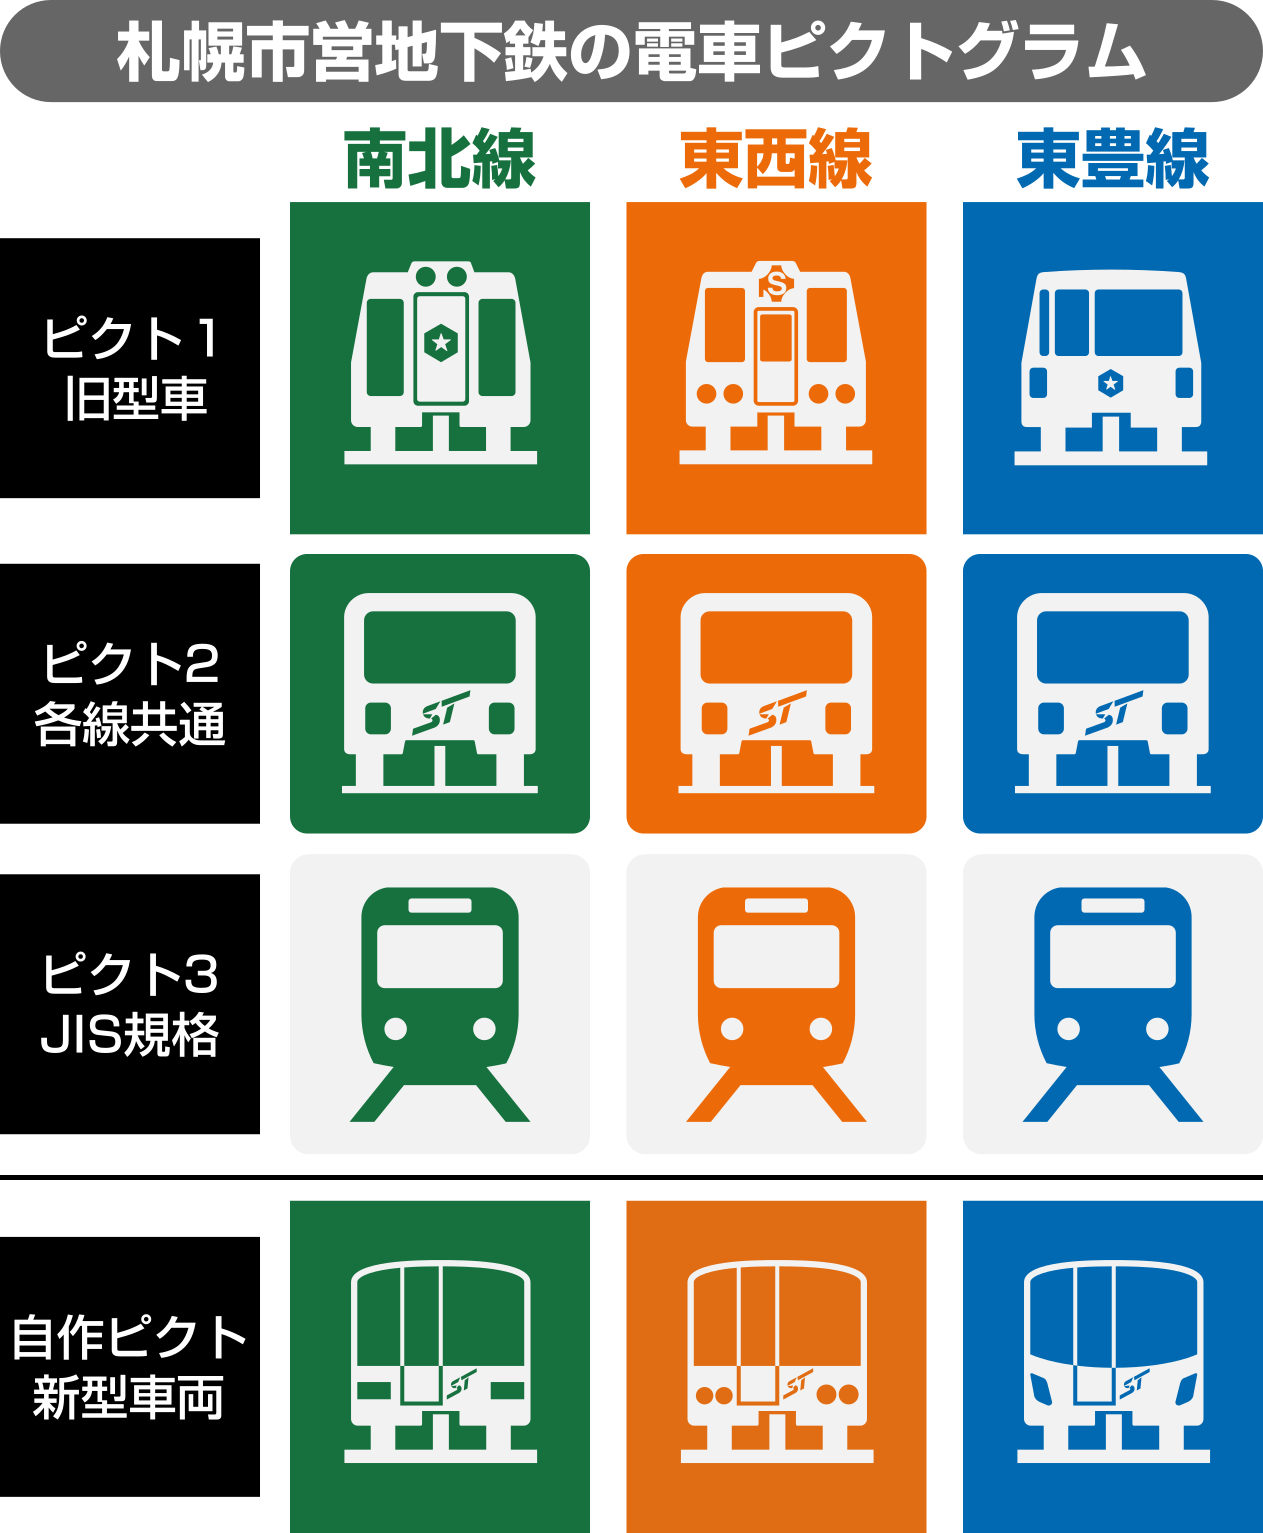 えいだんねこ Twitter પર 札幌市営地下鉄の電車ピクトグラムまとめ 一番下はおまけの自作ピクトな